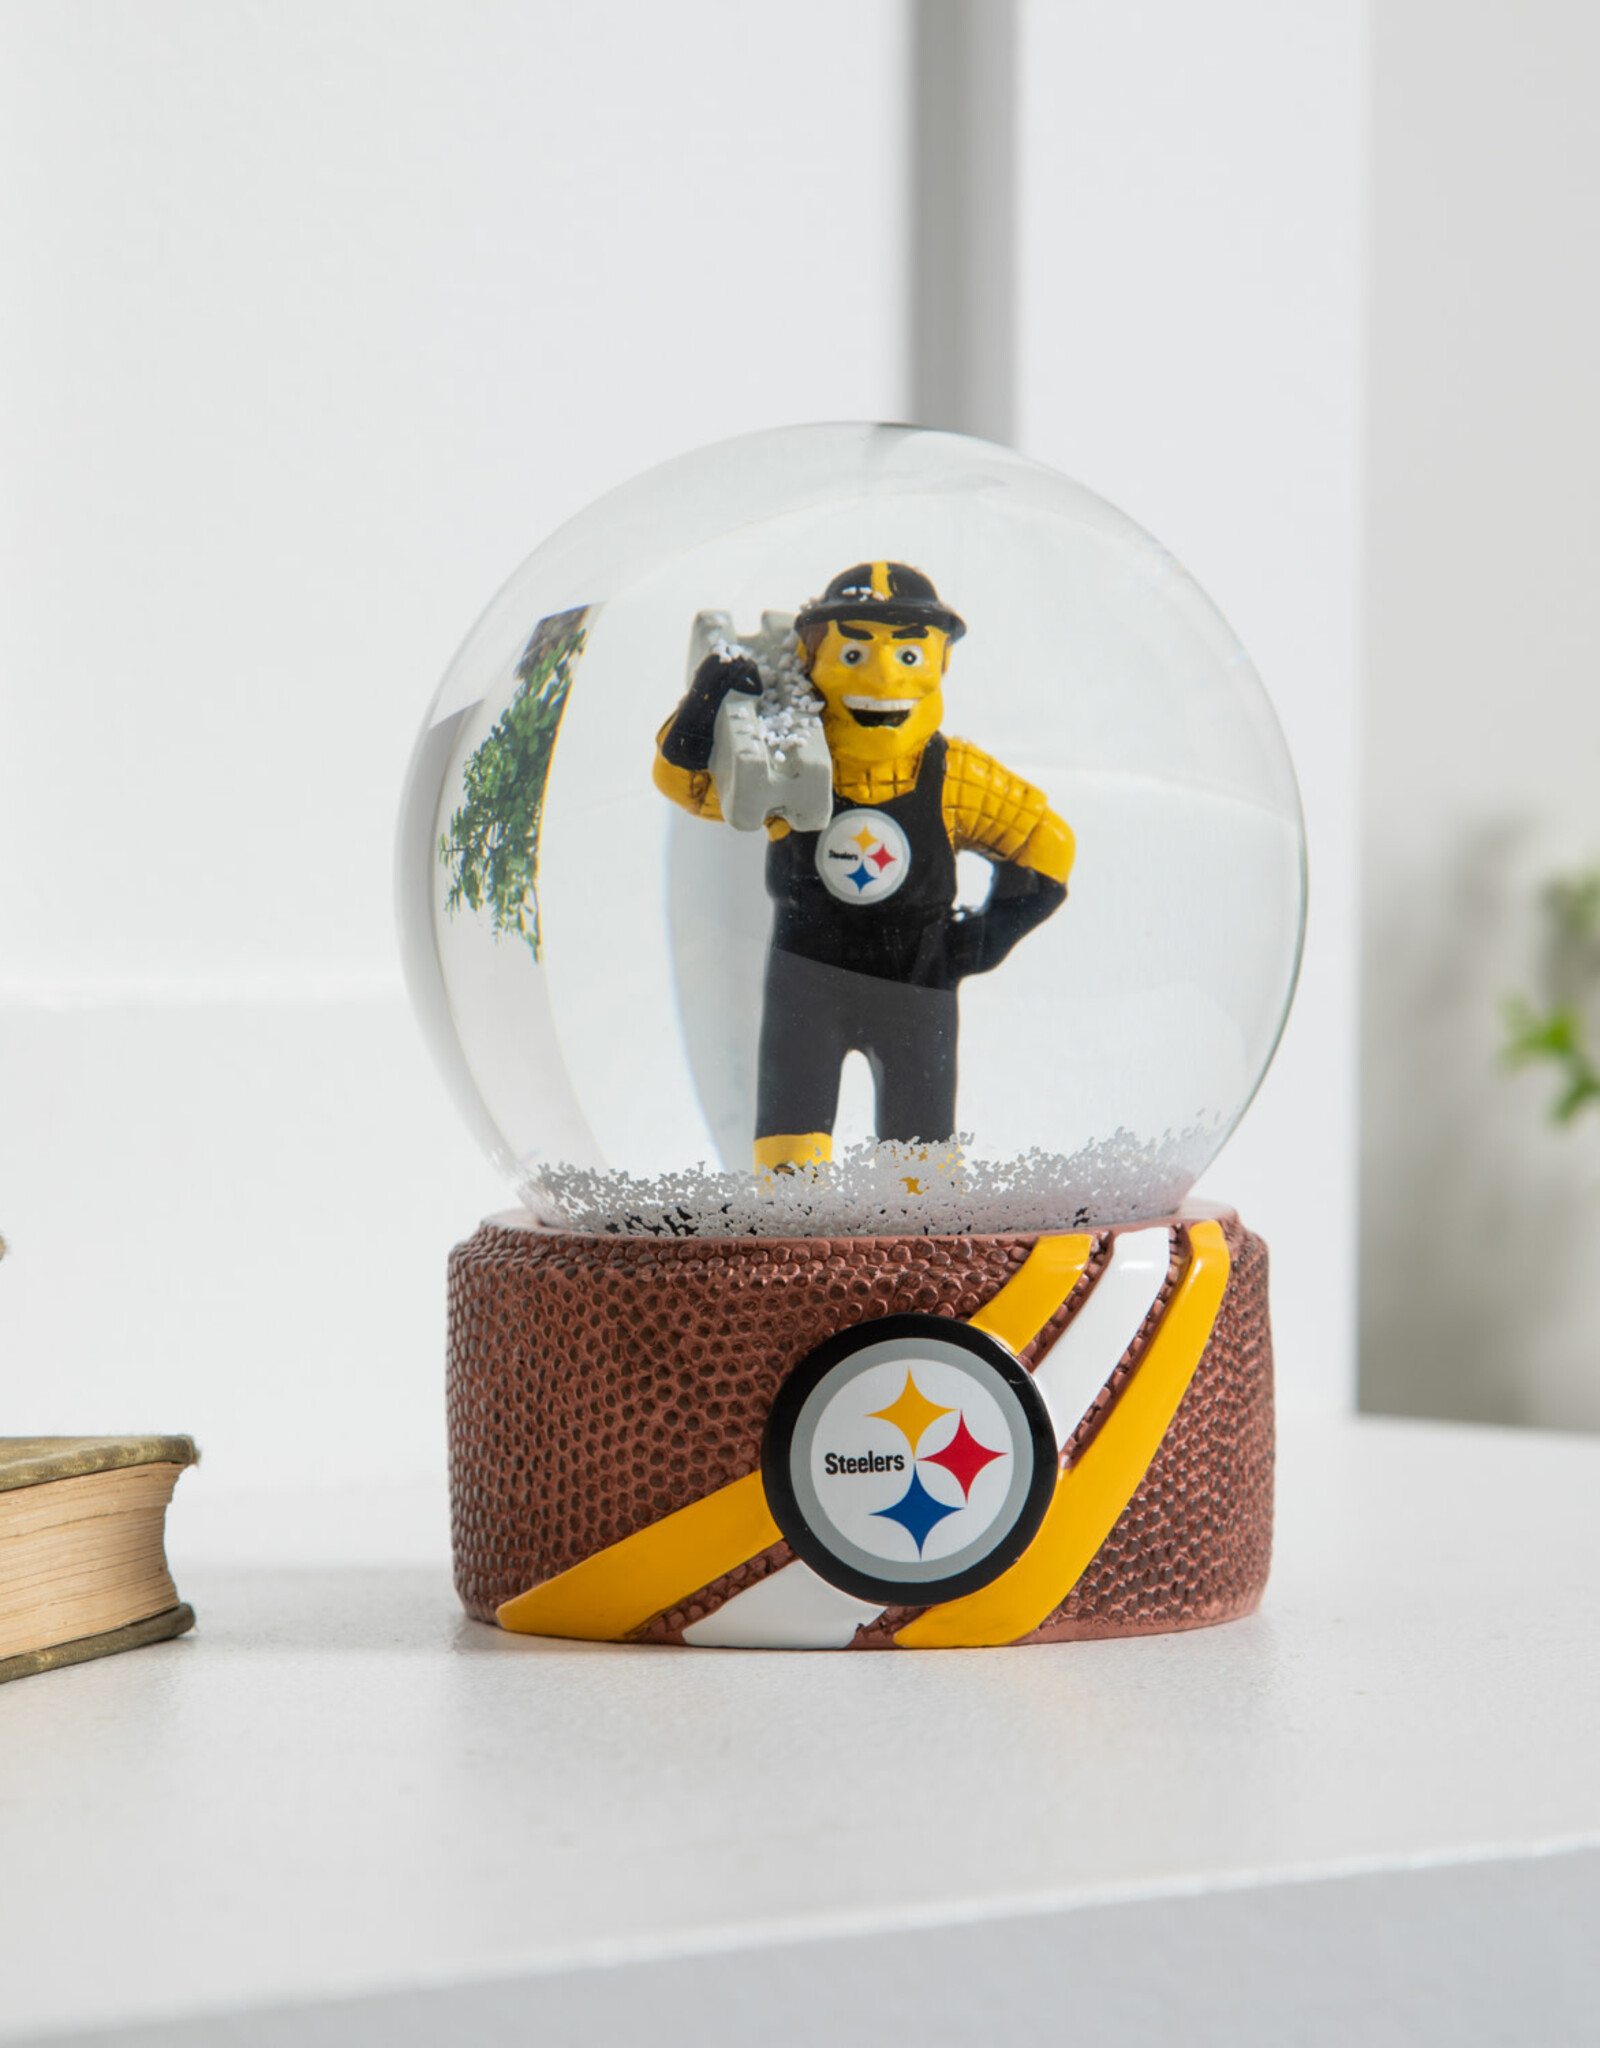 EVERGREEN Pittsburgh Steelers Water Globe